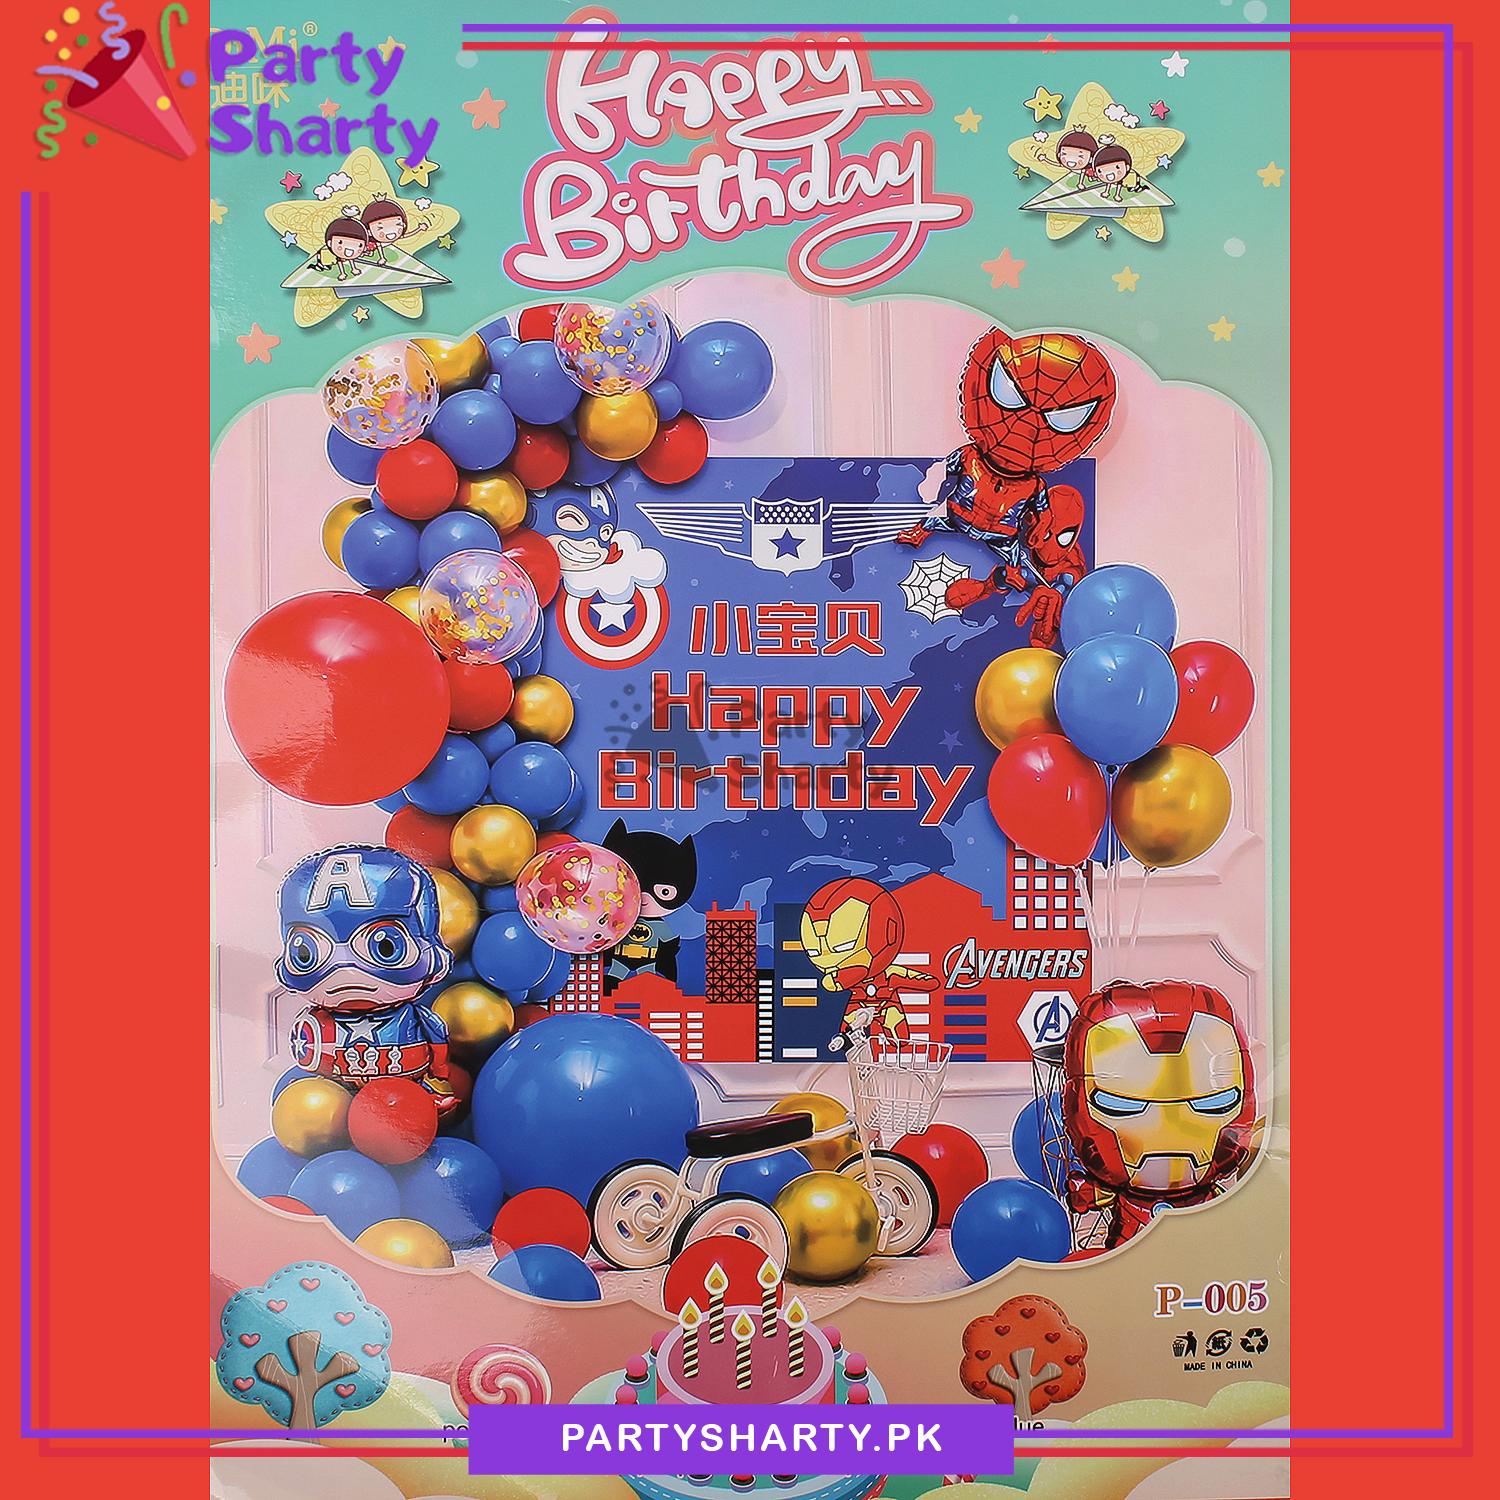 D-2 Happy Birthday Avenger Theme Set For Marvel Avenger Theme Birthday Decoration and Celebration